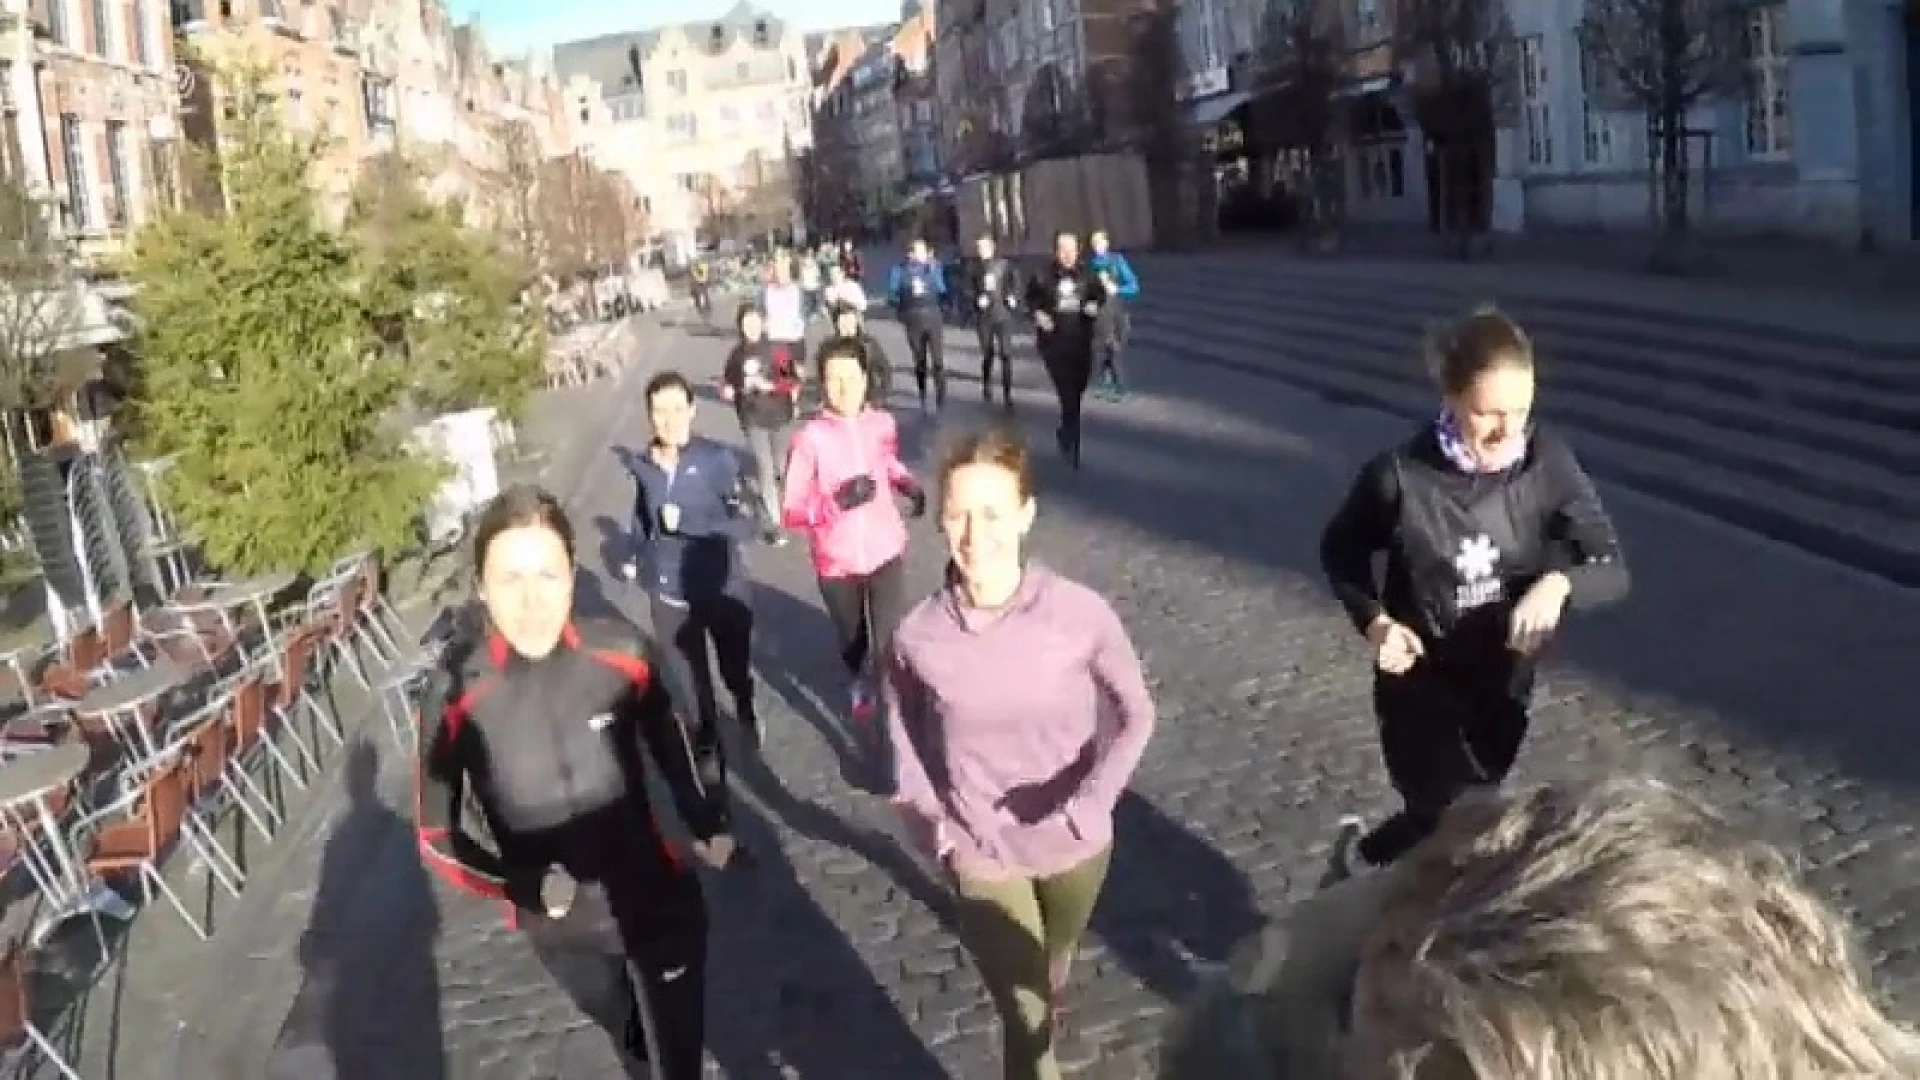 Ontdek al joggend de stad met gratis app met toeristiche routes